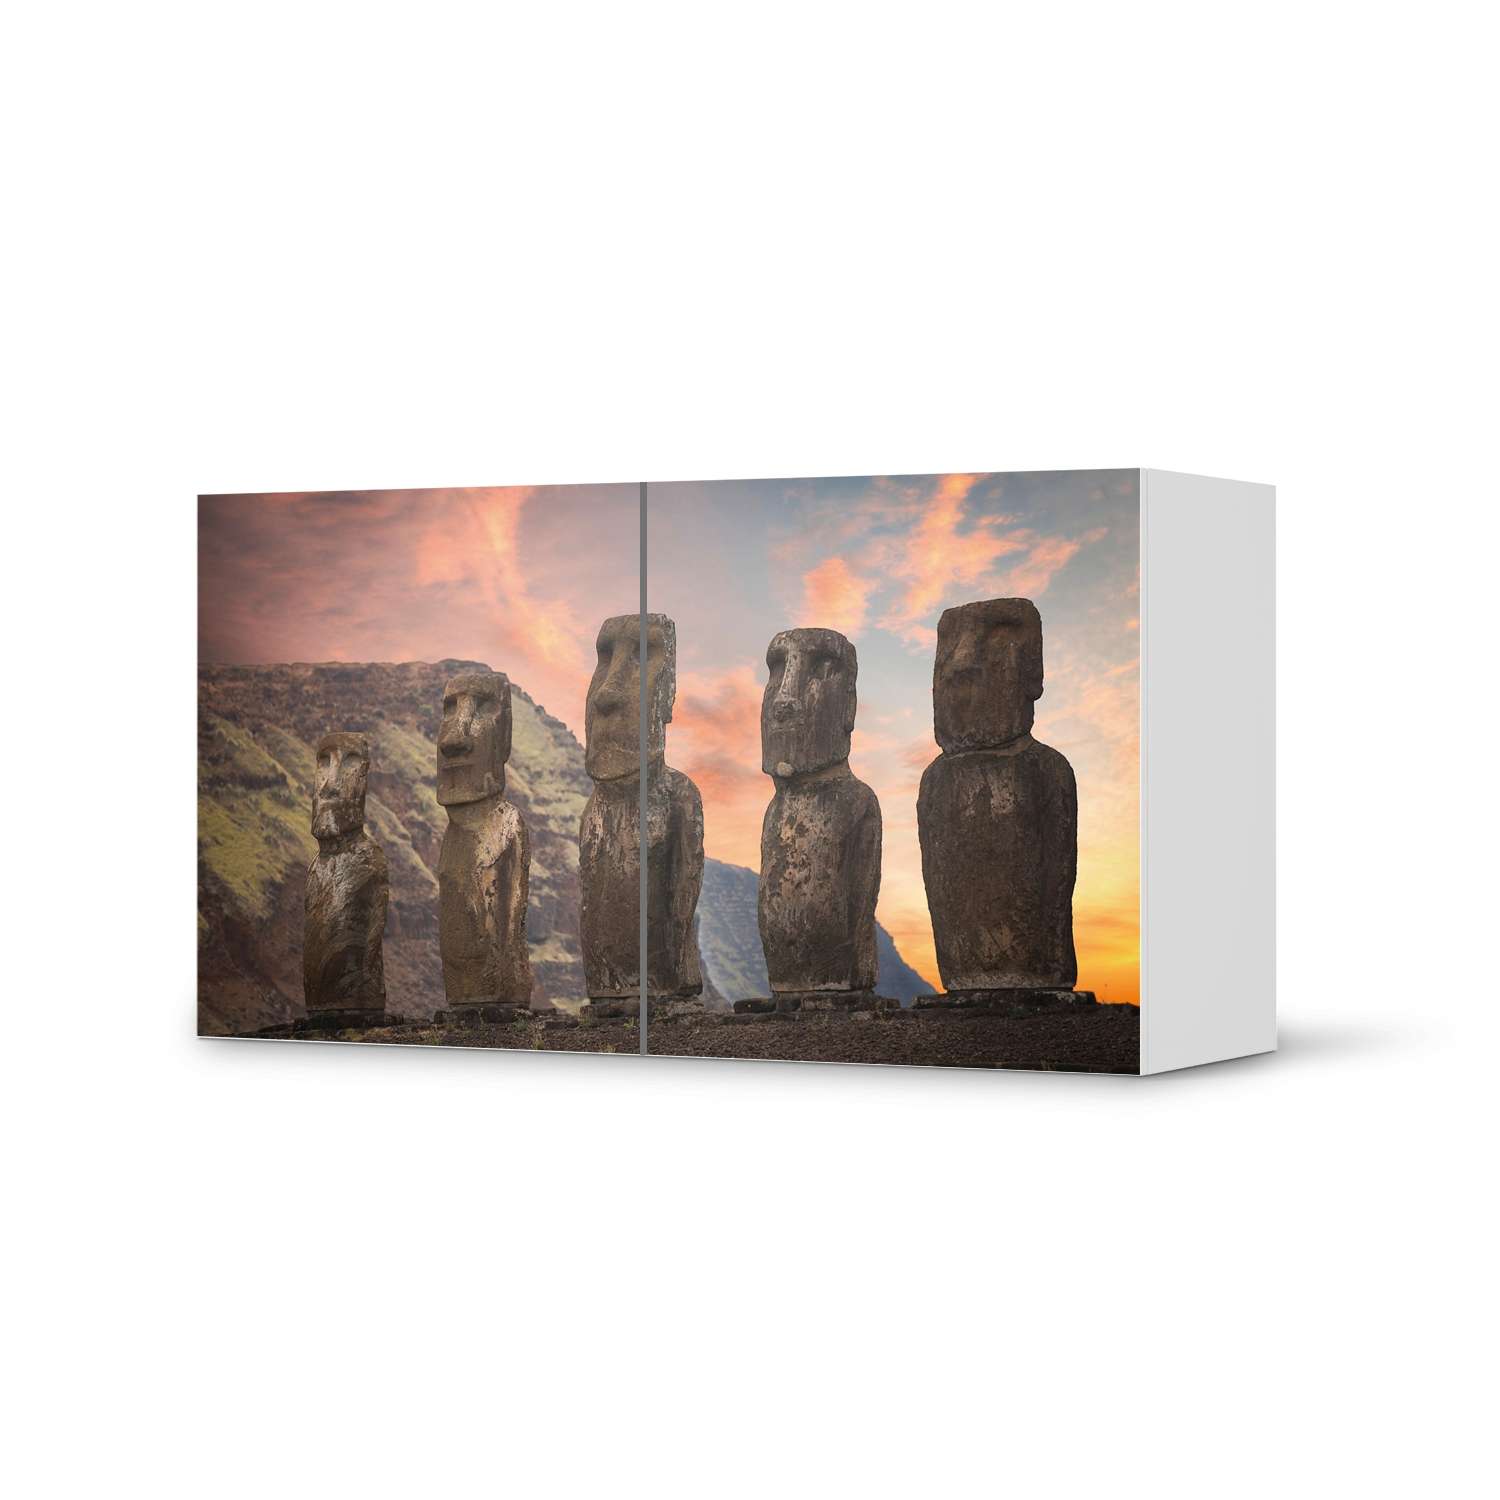 Folie f?r M?bel IKEA Besta Regal 2 T?ren (quer) - Design: Easter Island von creatisto